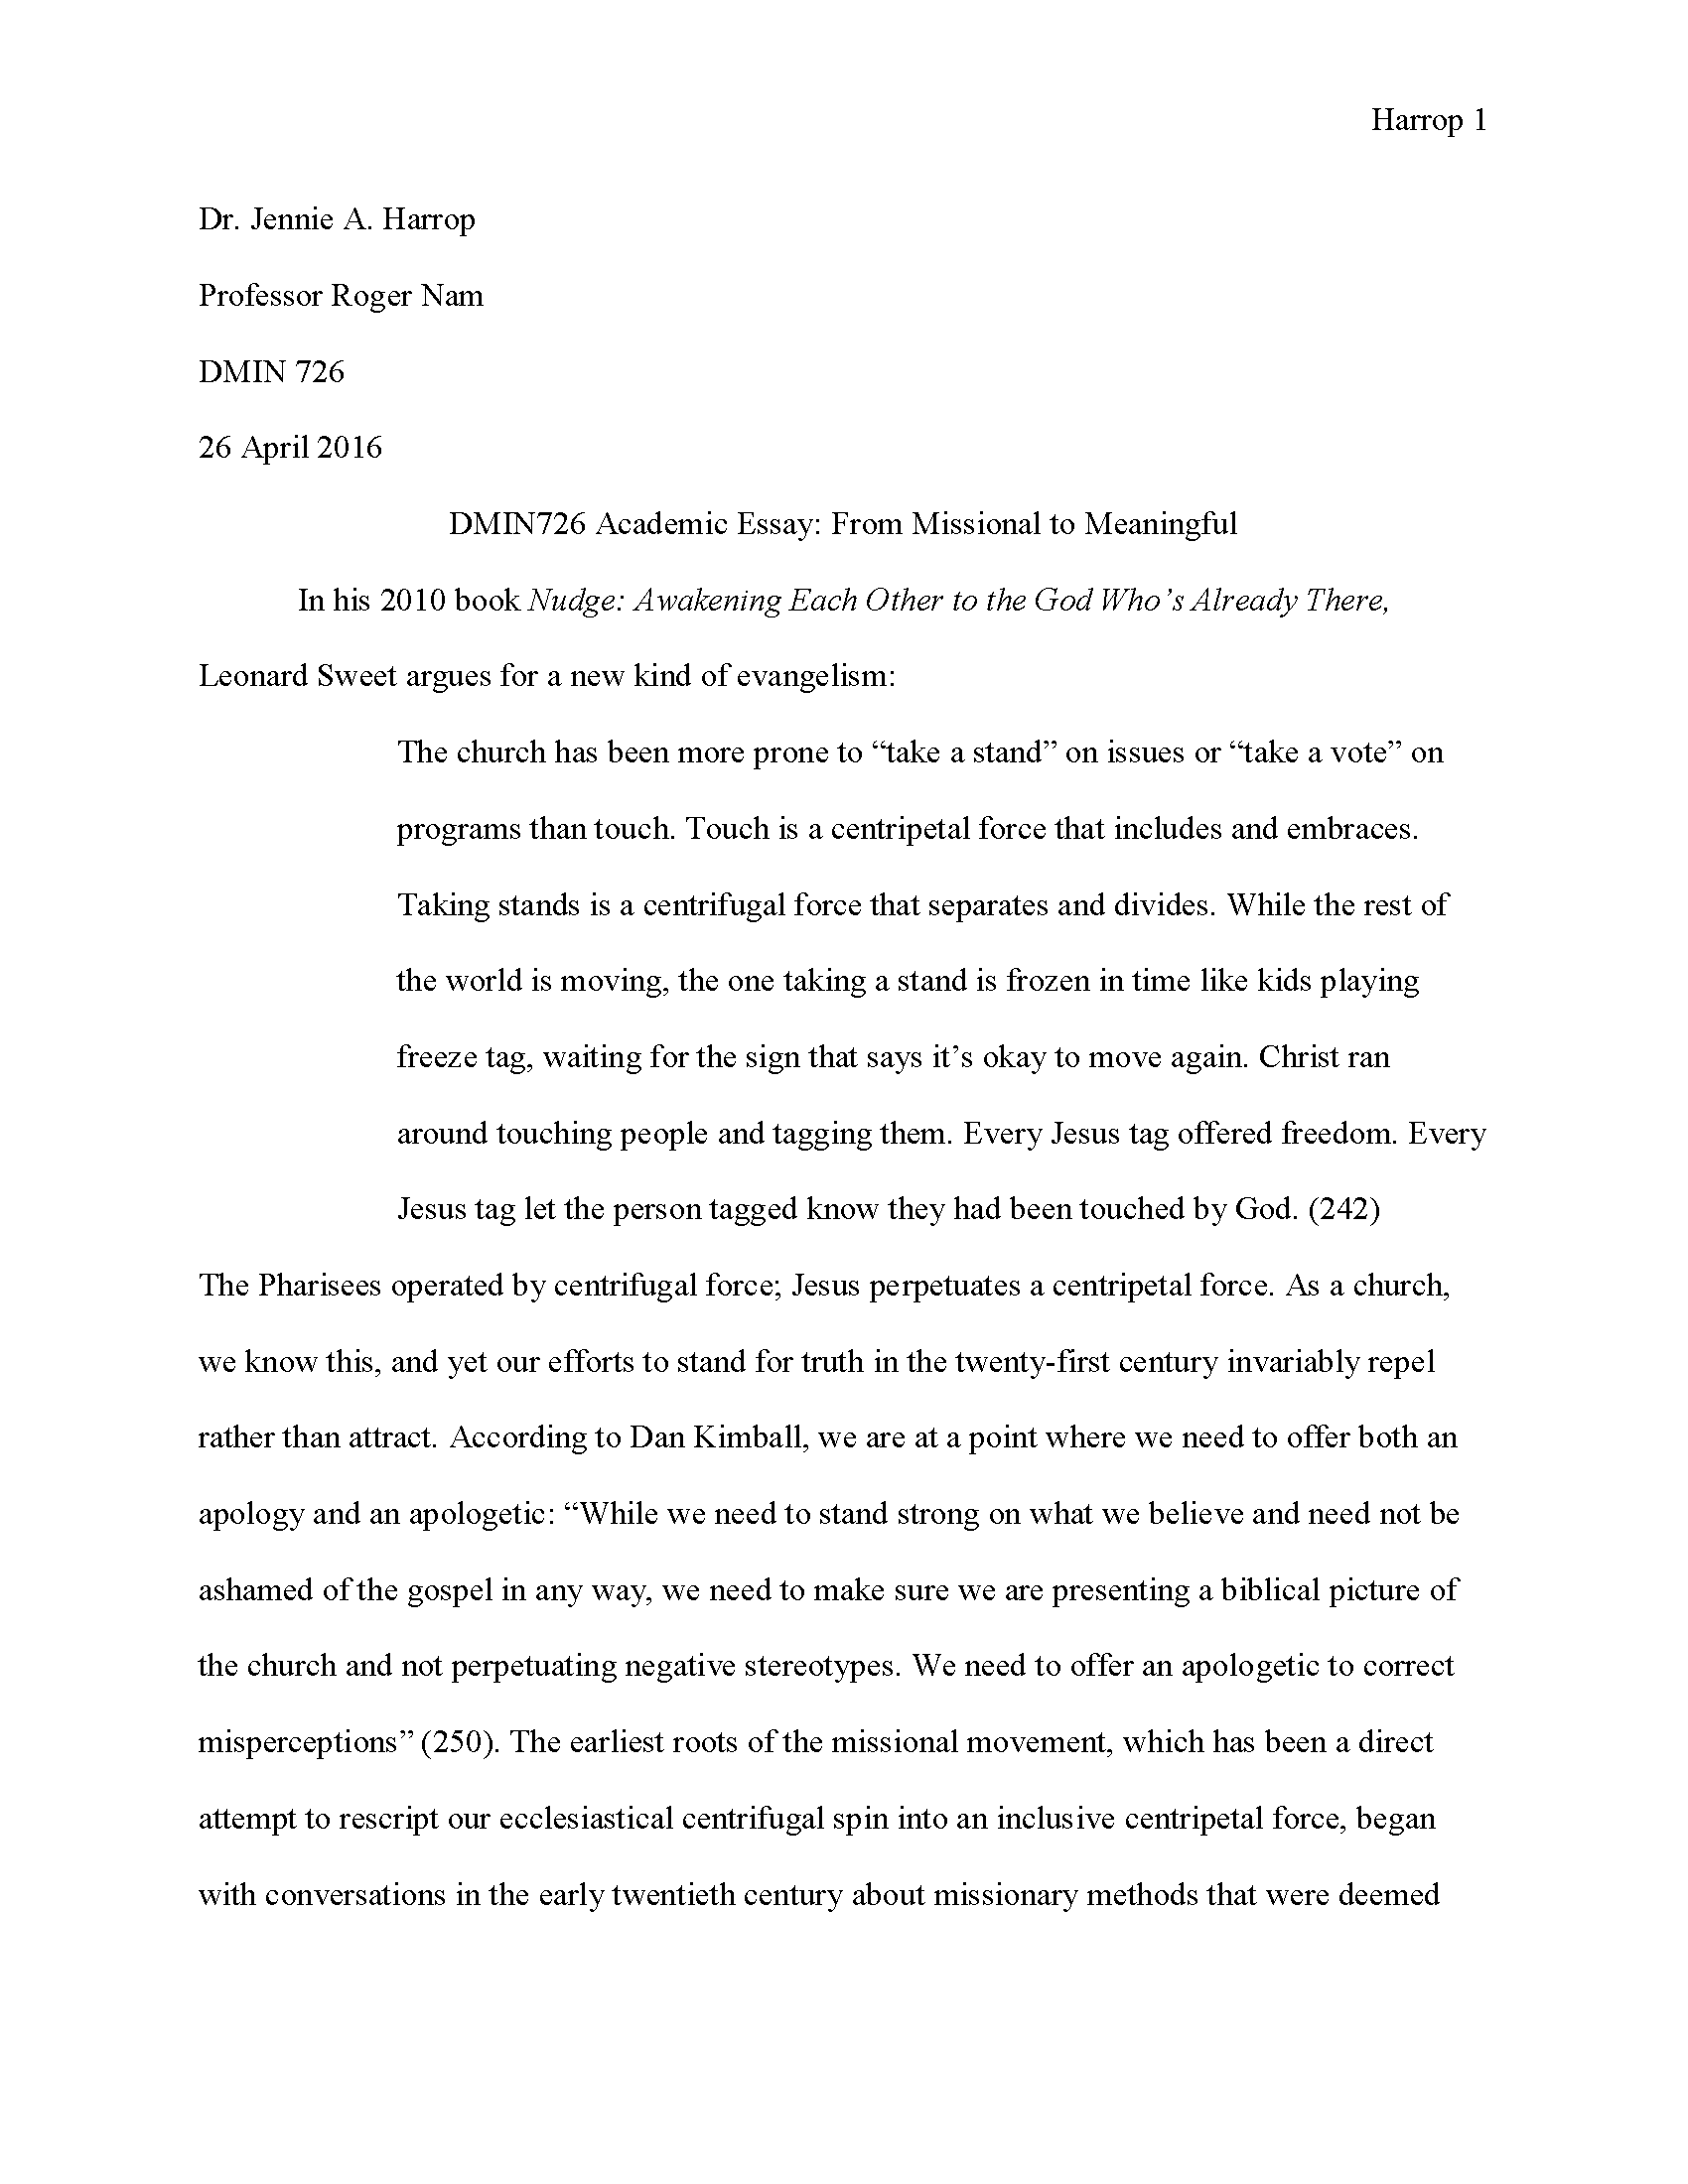 MLA Essay Page 1